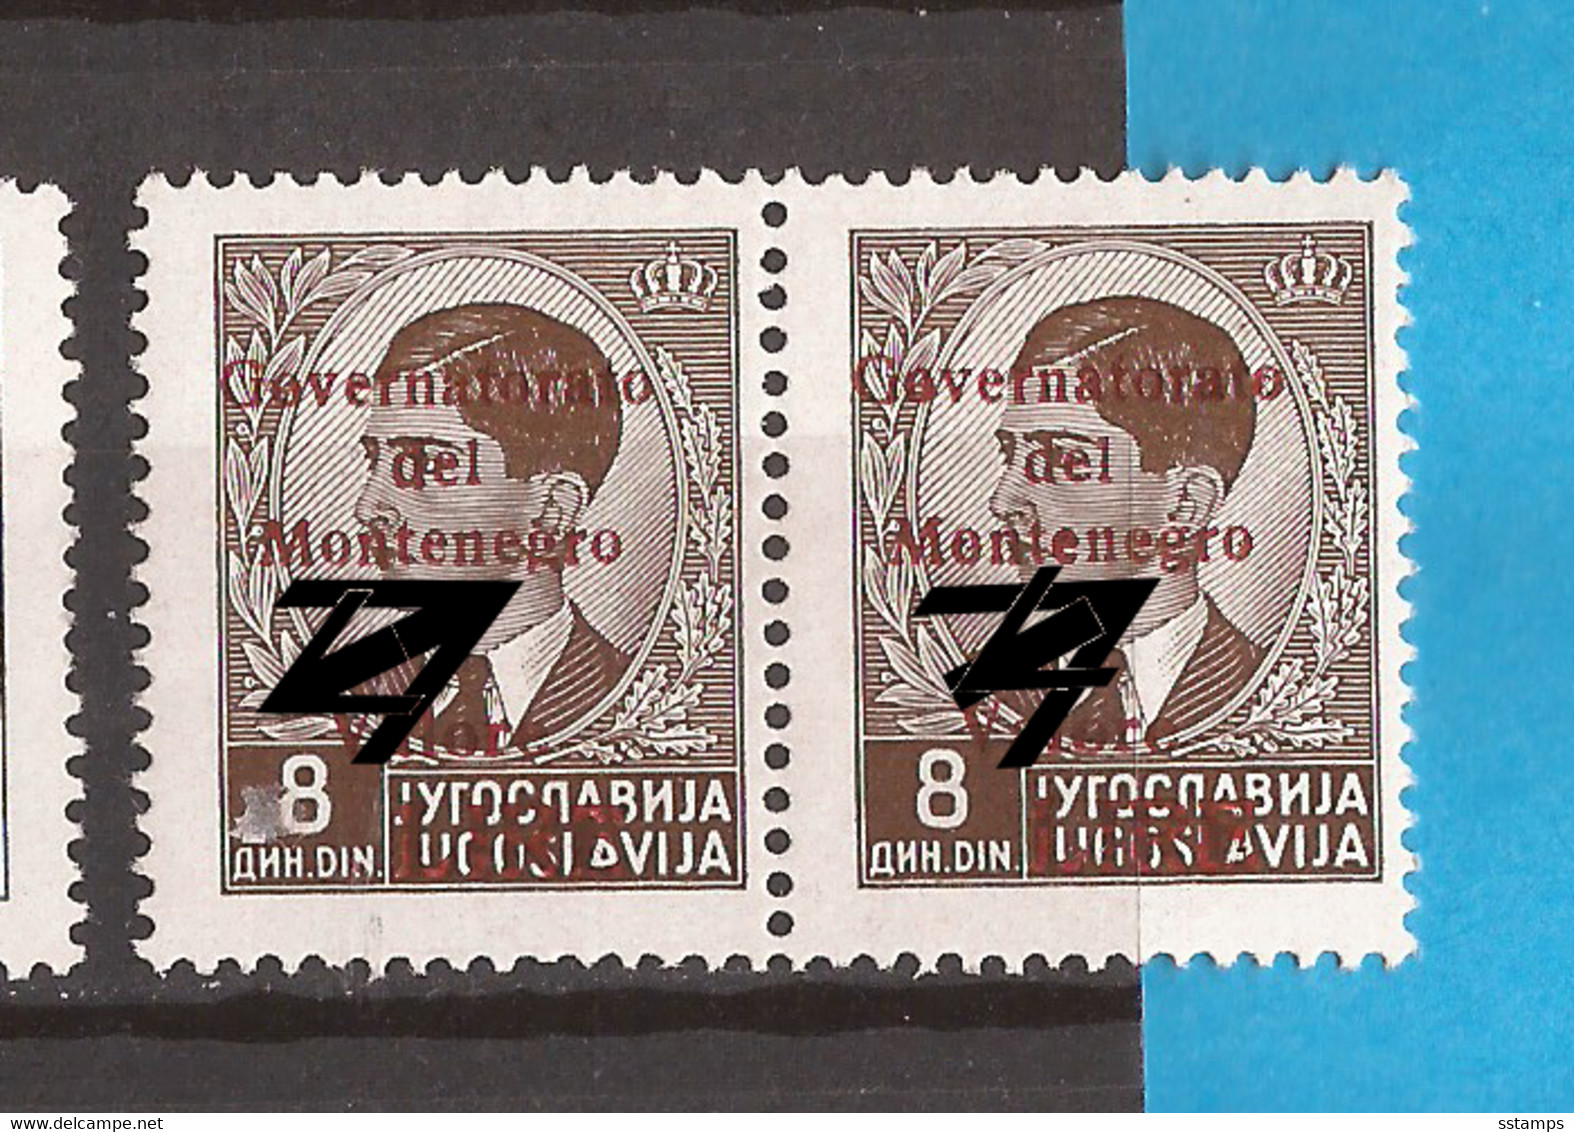 CG- MONT  2  1941 41 A--RRR-ERROR-  G  -  SELTEN SEHR !!!!!!   ITALIEN   OCCUPATION LUX   -MONTENEGRO CRNA GORA  HINGED - Montenegro